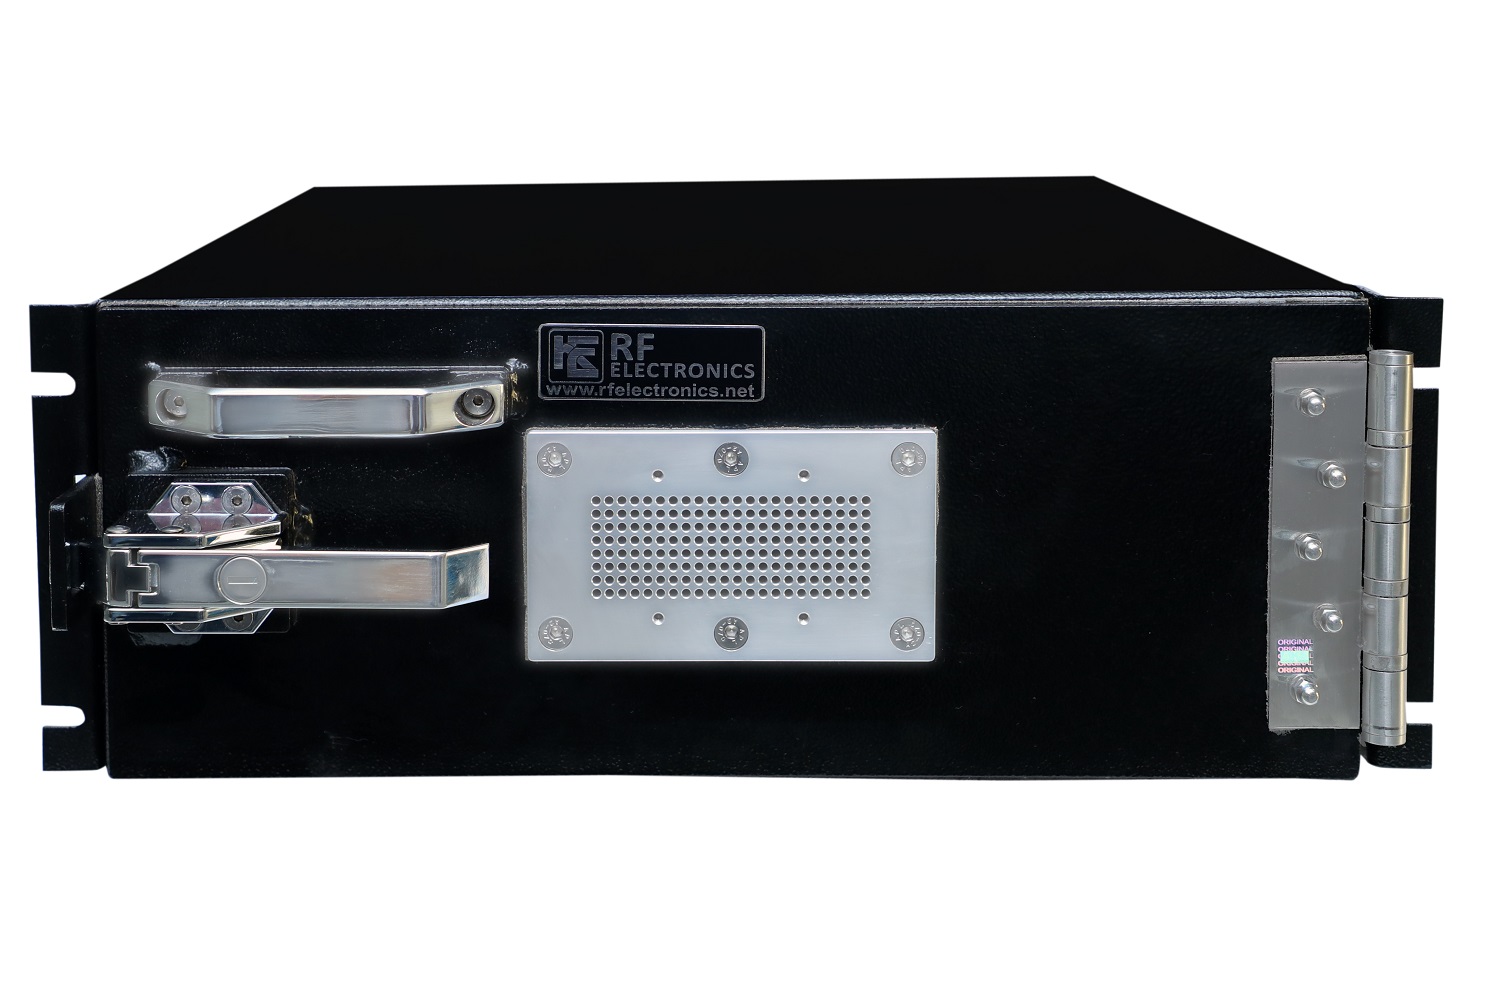 HDRF-4U19 RF Shield Test Box